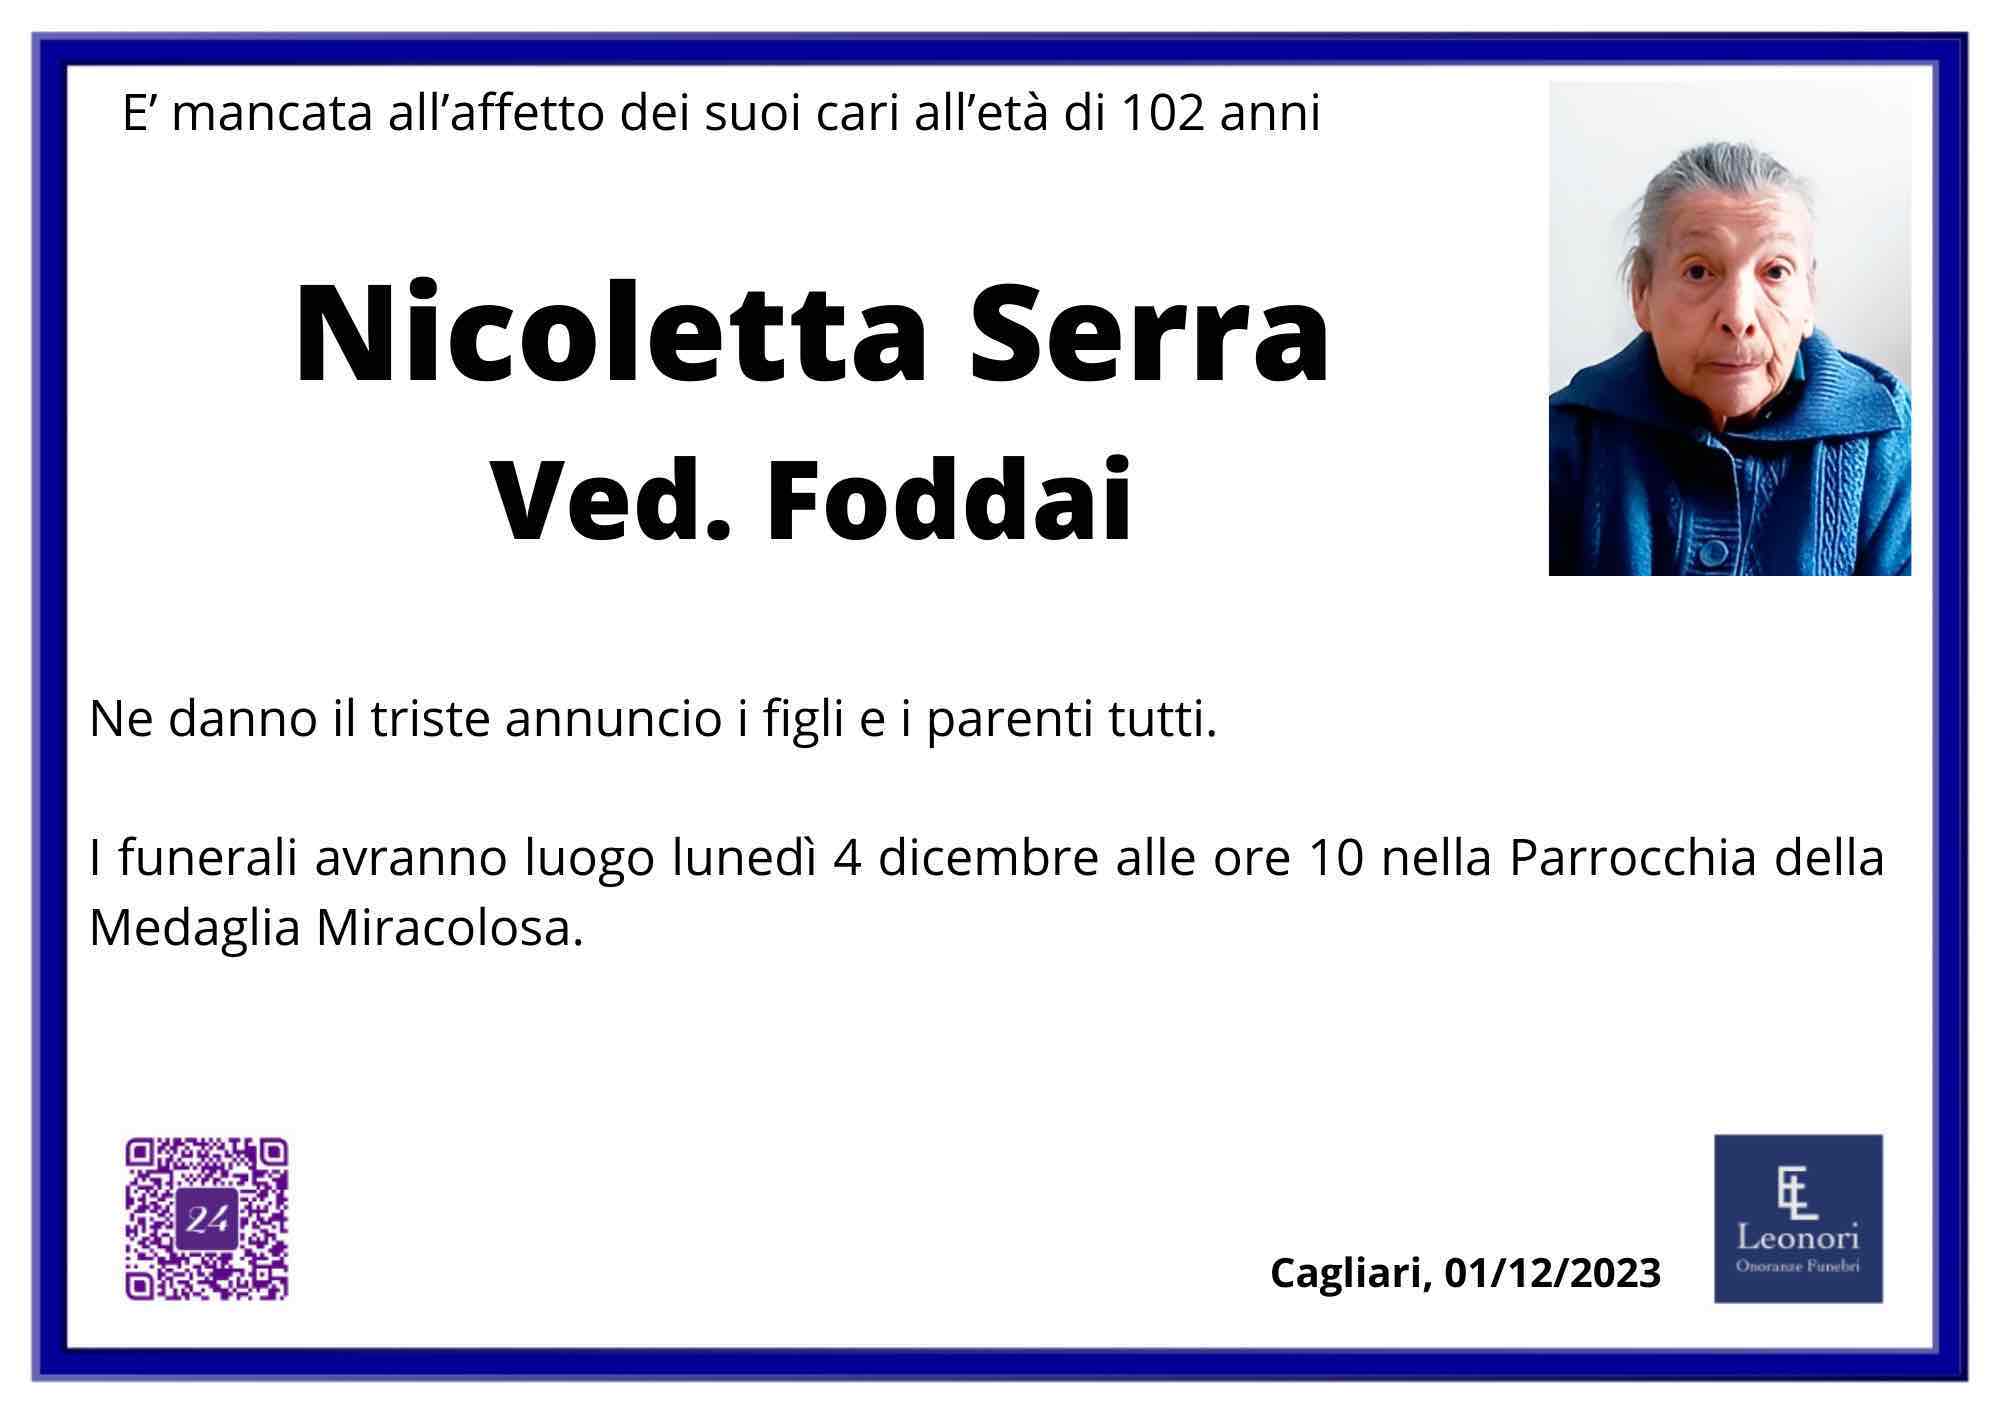 Nicoletta Serra